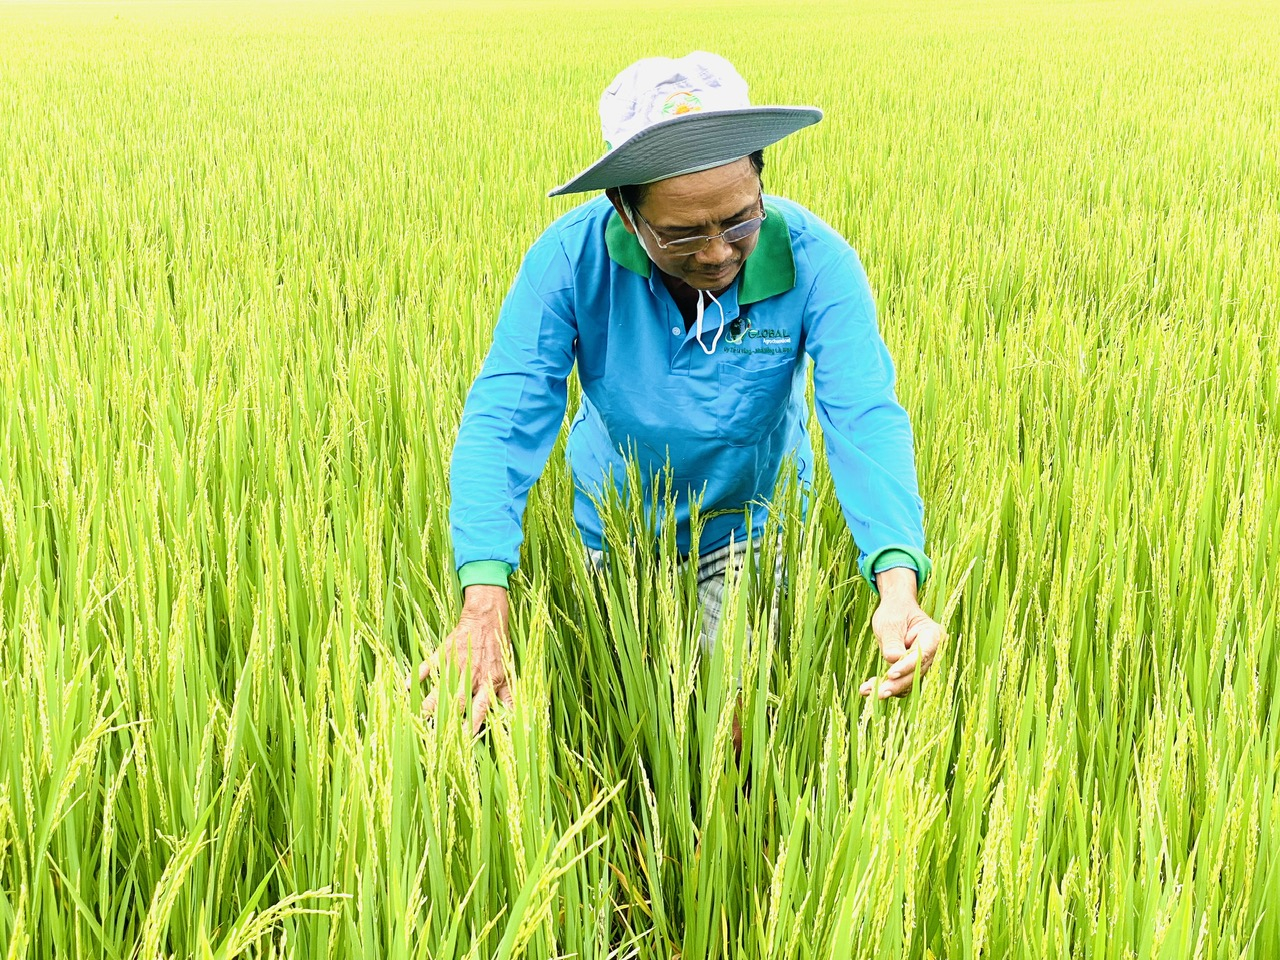 Nghị định quy định chi tiết đất trồng lúa nhằm hoàn thiện cơ sở pháp lý về quản lý, sử dụng đất trồng lúa theo quy định của Luật Đất đai năm 2024, Luật Trồng trọt năm 2018. Ảnh: Lê Hoàng Vũ.